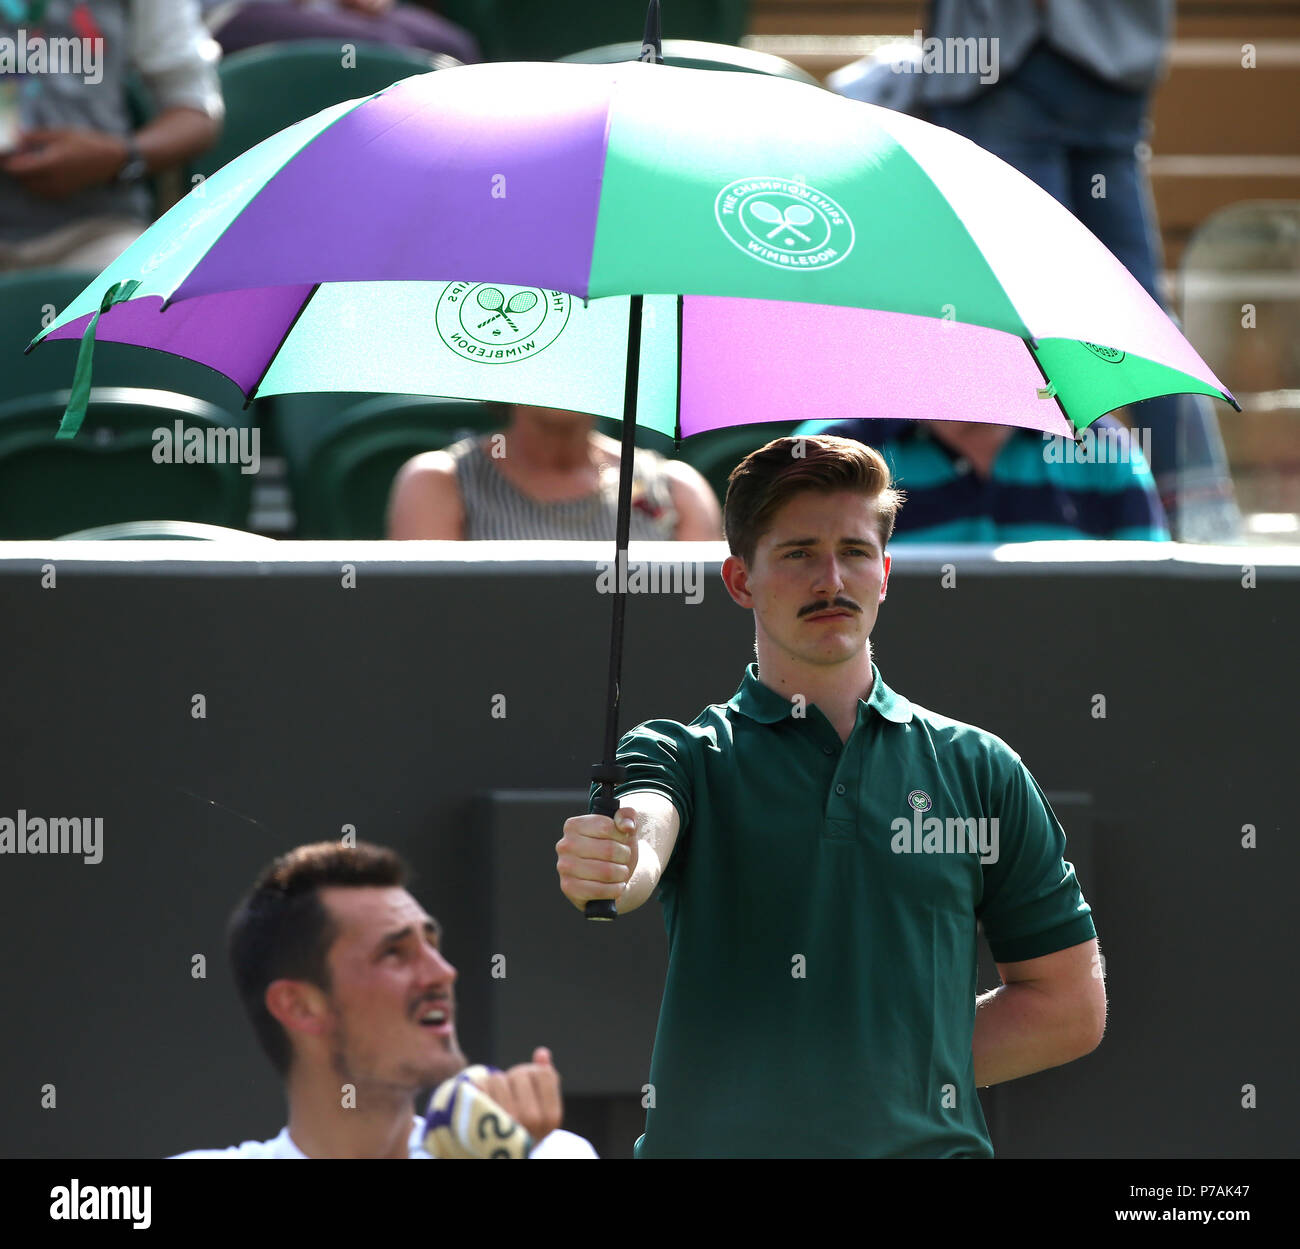 Wimbledon umbrella hi-res stock photography and images - Alamy